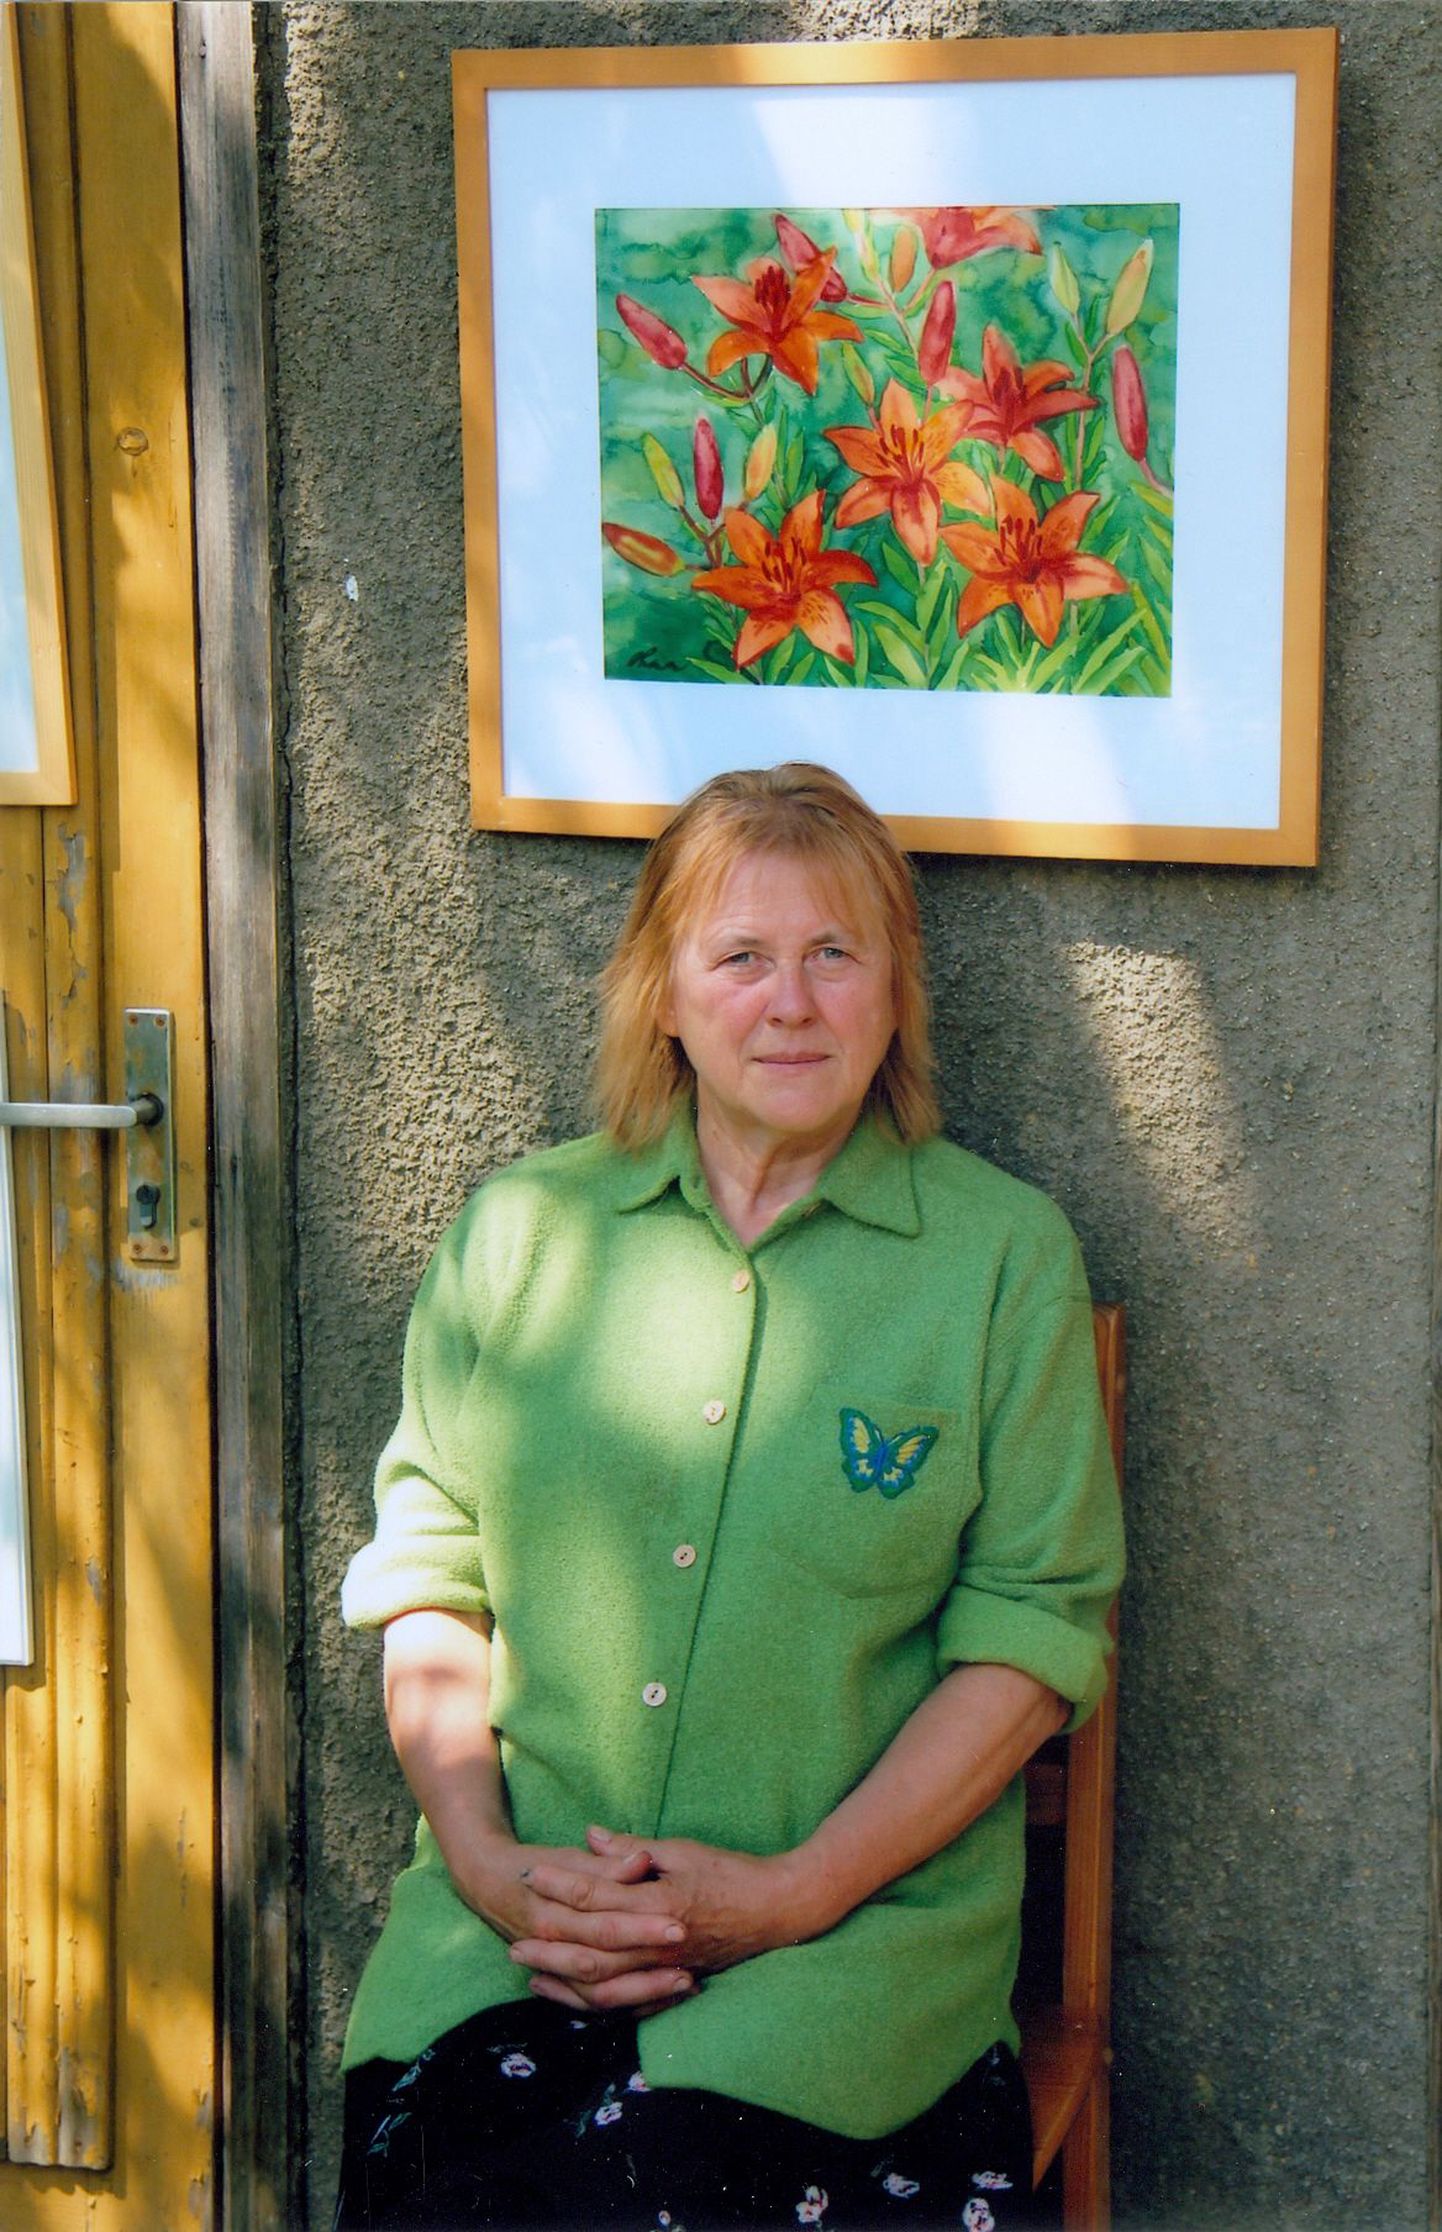 Otepääl pensionipõlve pidav kunstnik Reet Ohna avas Valga kultuurikeskuses oma esimese näituse Valgamaal.Väljas on 14 maali, millest enamikul lilled.